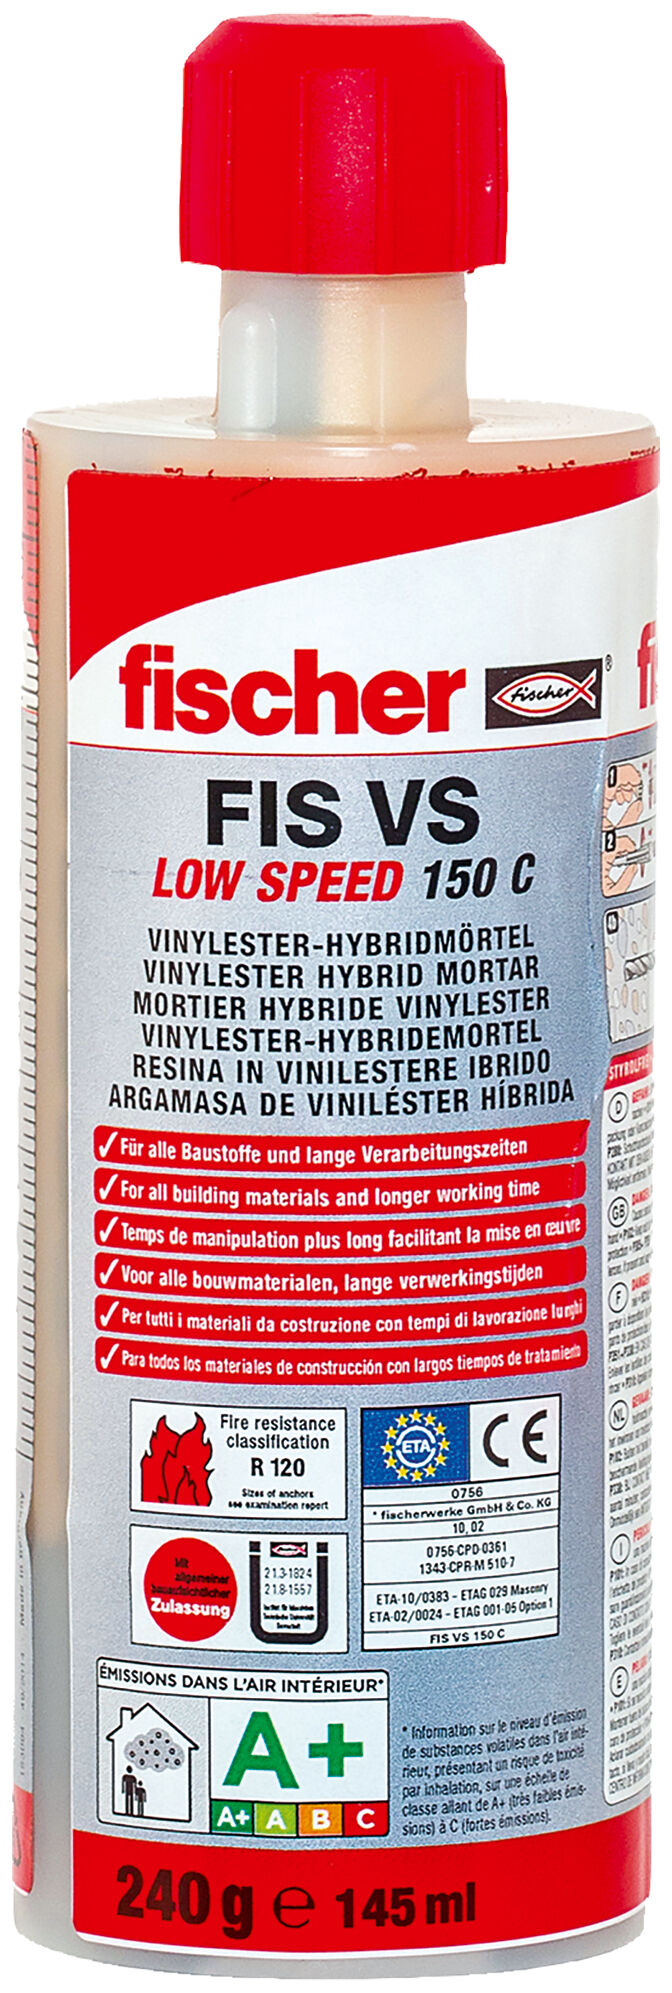 fischer Injection mortar FIS VS LOW SPEED 150 C